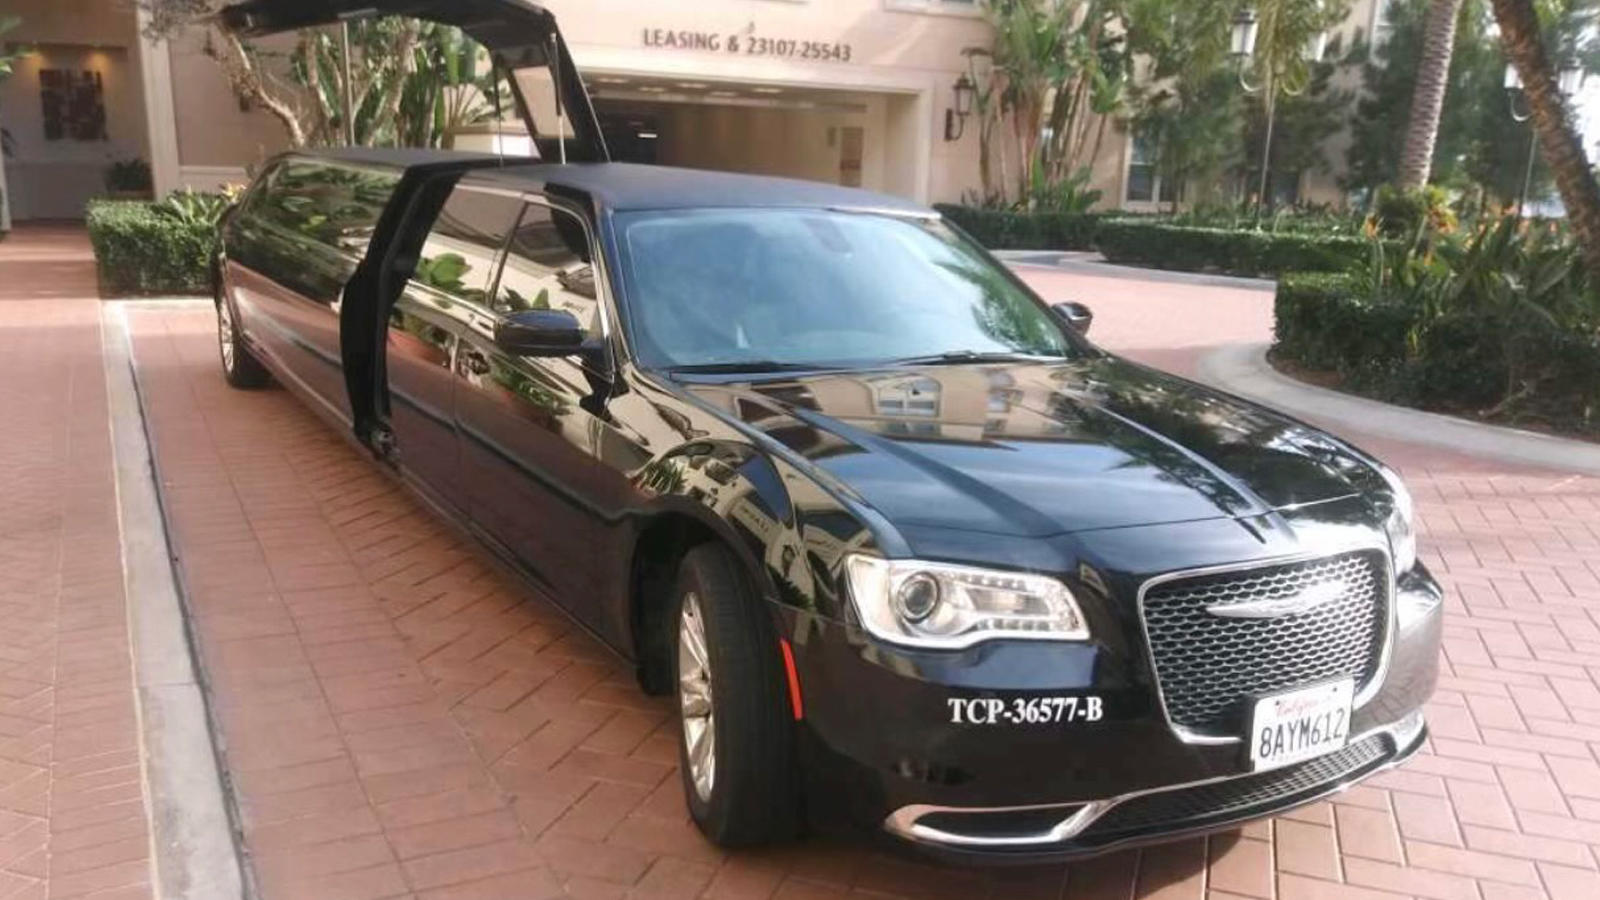 OC VIP LIMO-Chrysler negra para 10 pasajeros OC VIP LIMO Anaheim (714)617-7985